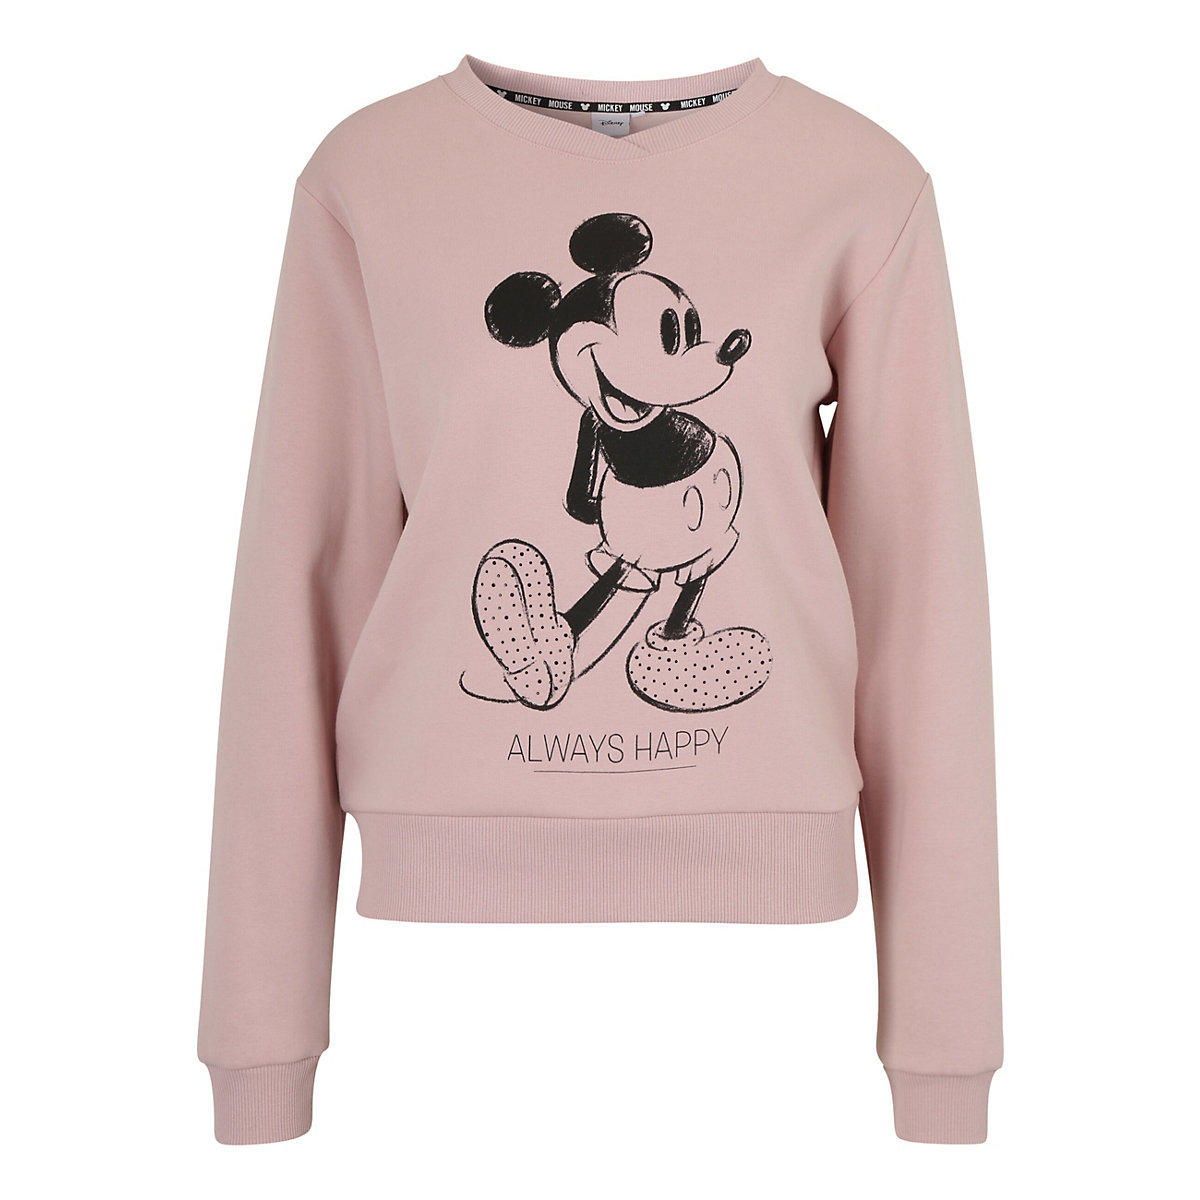 COURSE Sweatshirt Mickey Mouse Always Happy Sweatshirts rosa